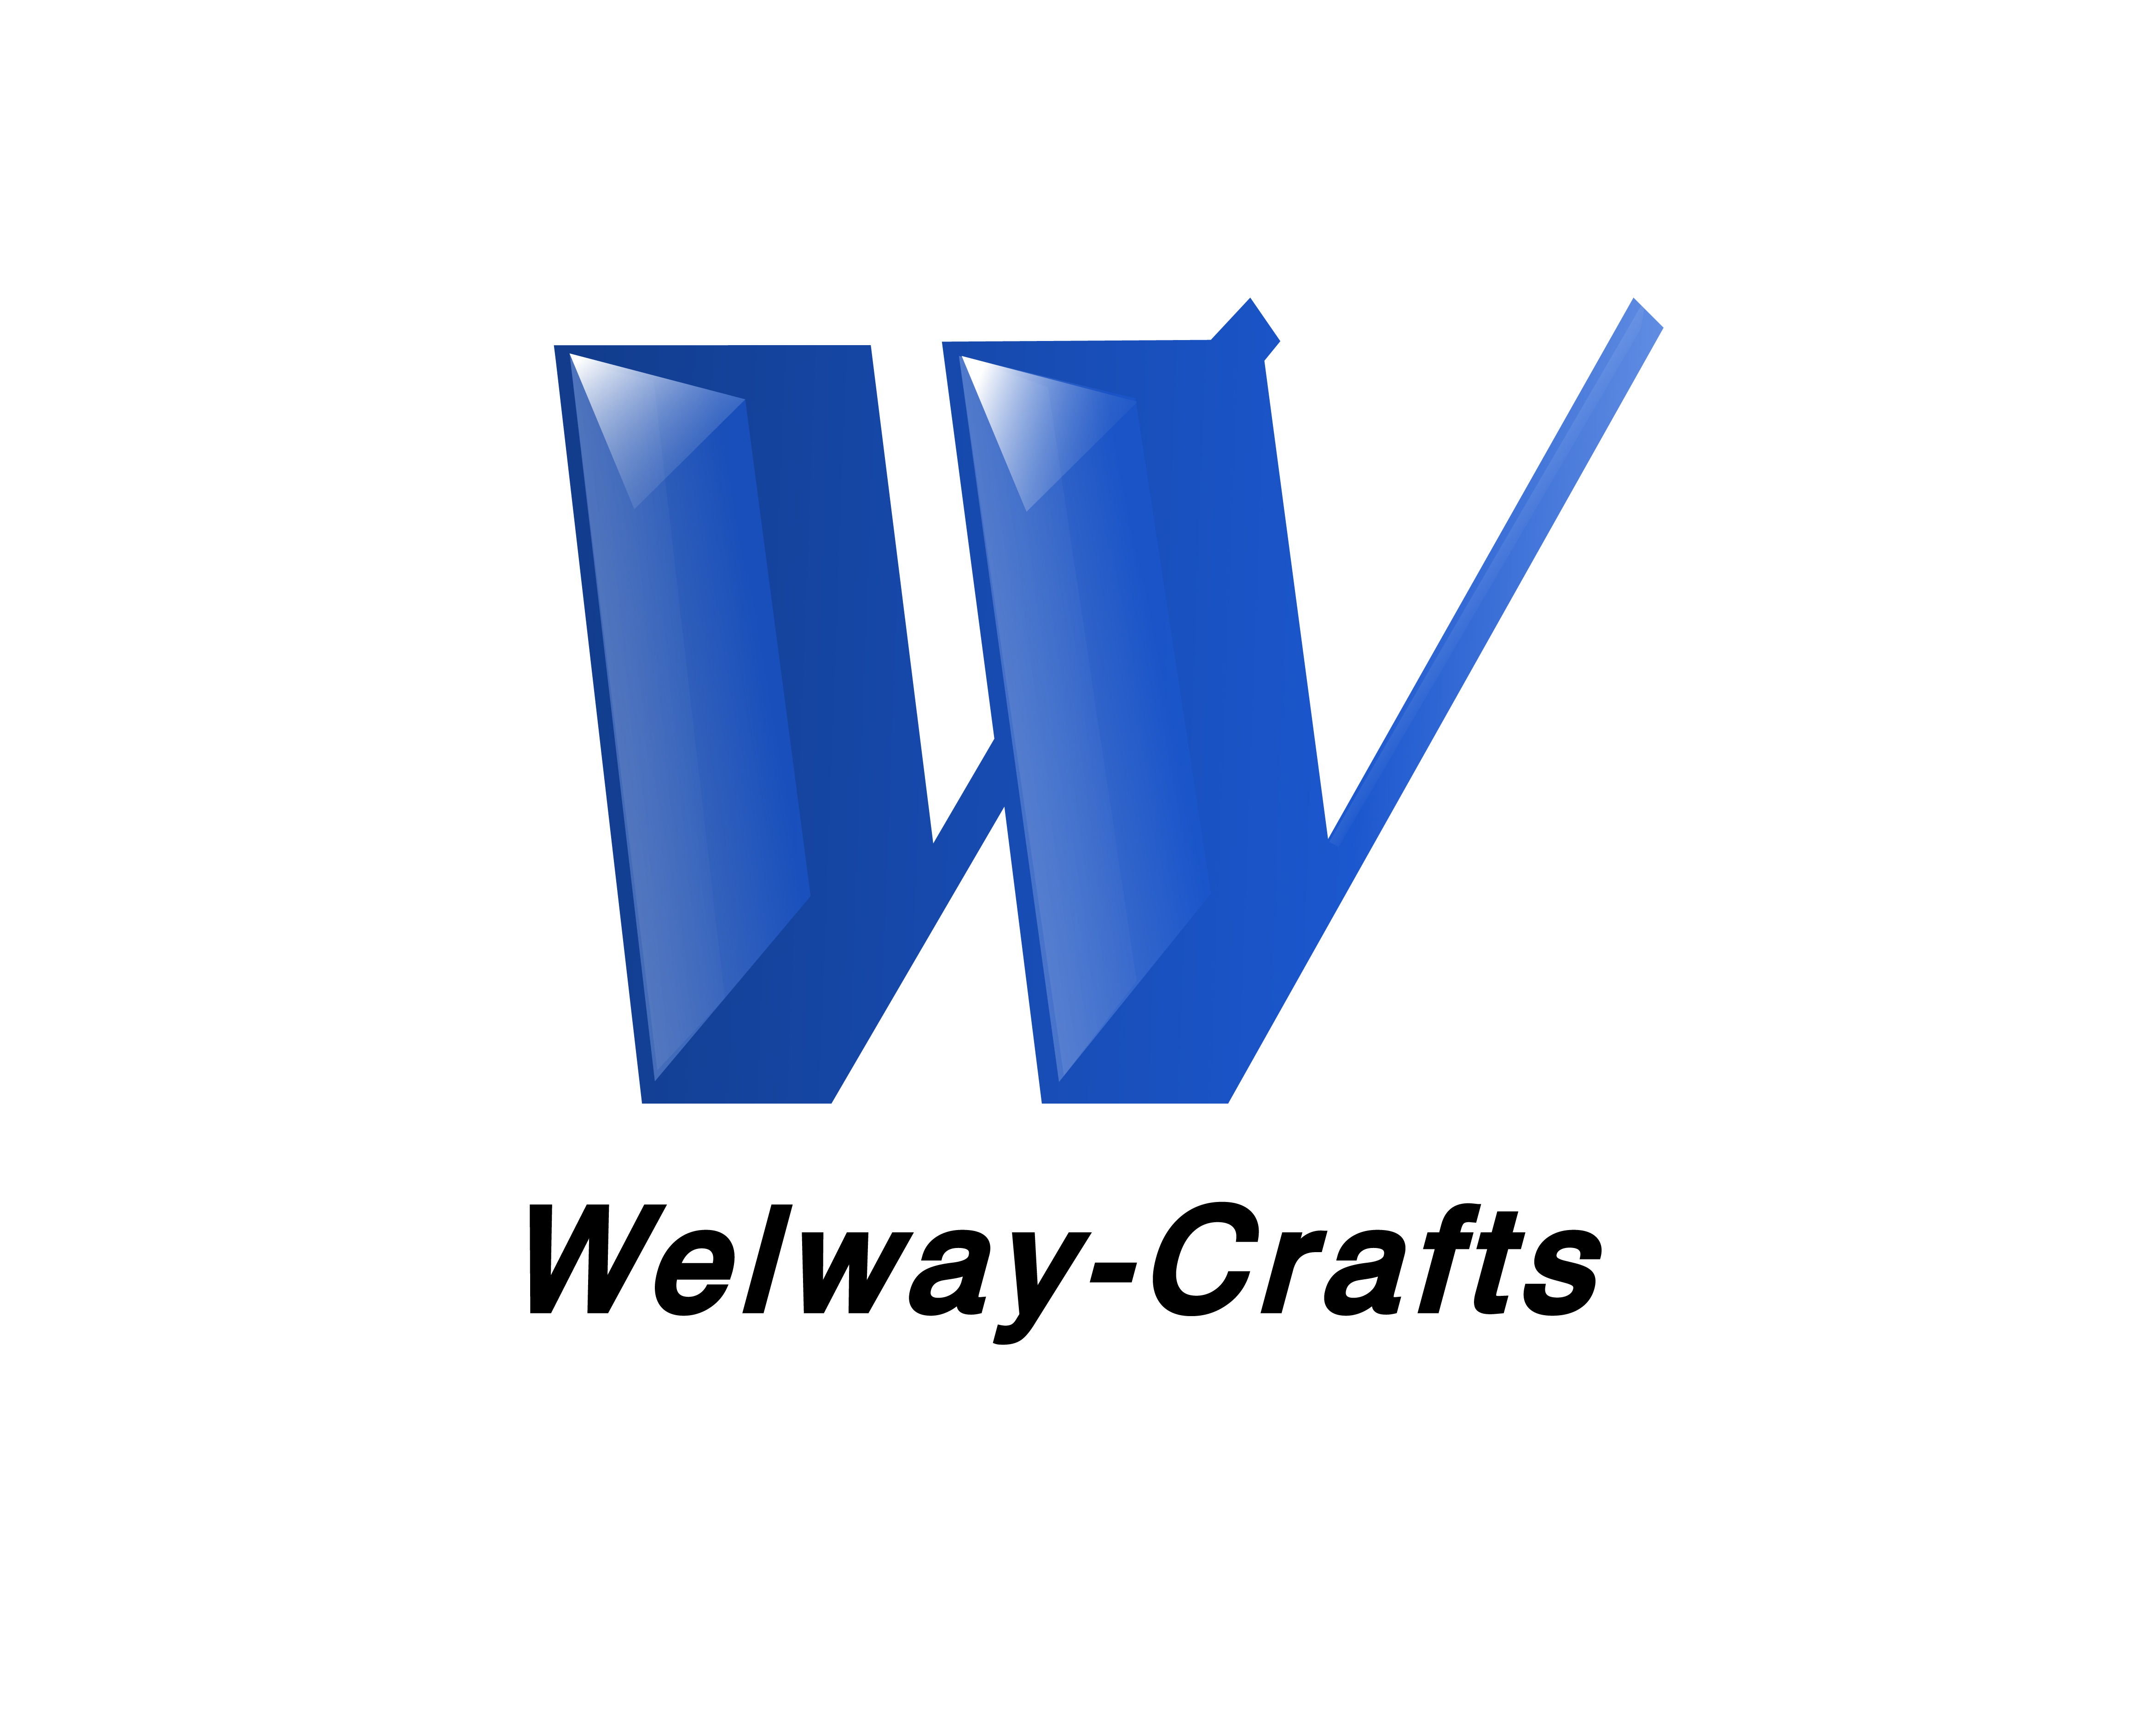 YANTAI WELWAY-CRAFTS CO., LTD.